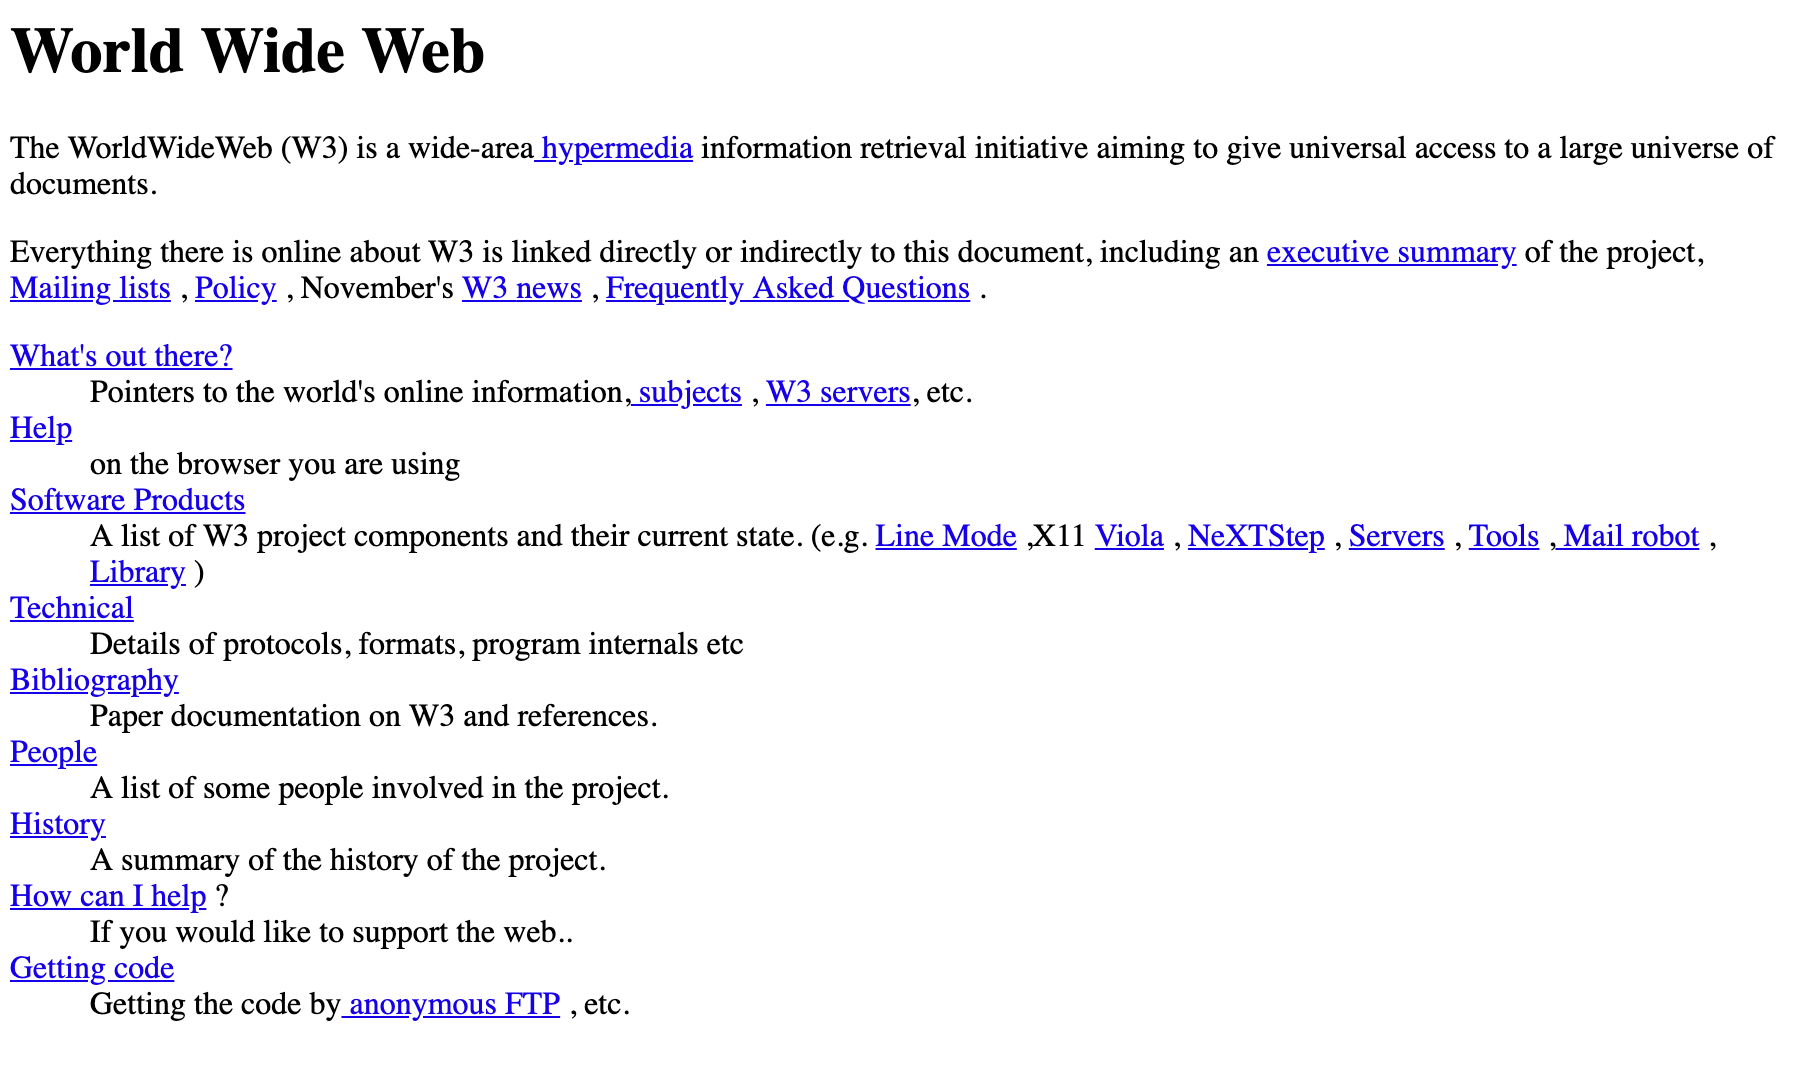 Bild der ersten Internet-Website, erstellt 1991